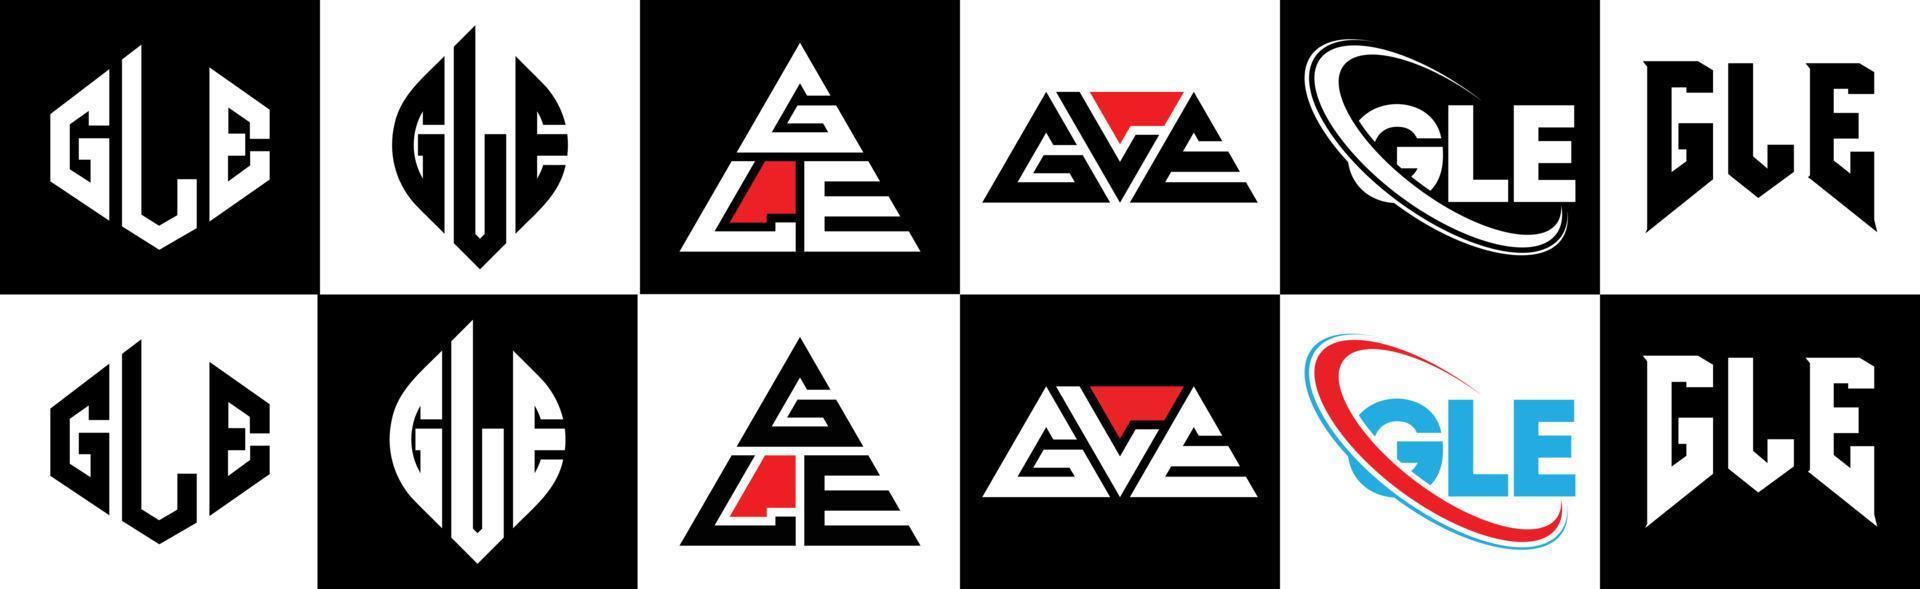 gle-Buchstaben-Logo-Design in sechs Stilen. gle polygon, kreis, dreieck, sechseck, flacher und einfacher stil mit schwarz-weißem buchstabenlogo in einer zeichenfläche. gle minimalistisches und klassisches Logo vektor